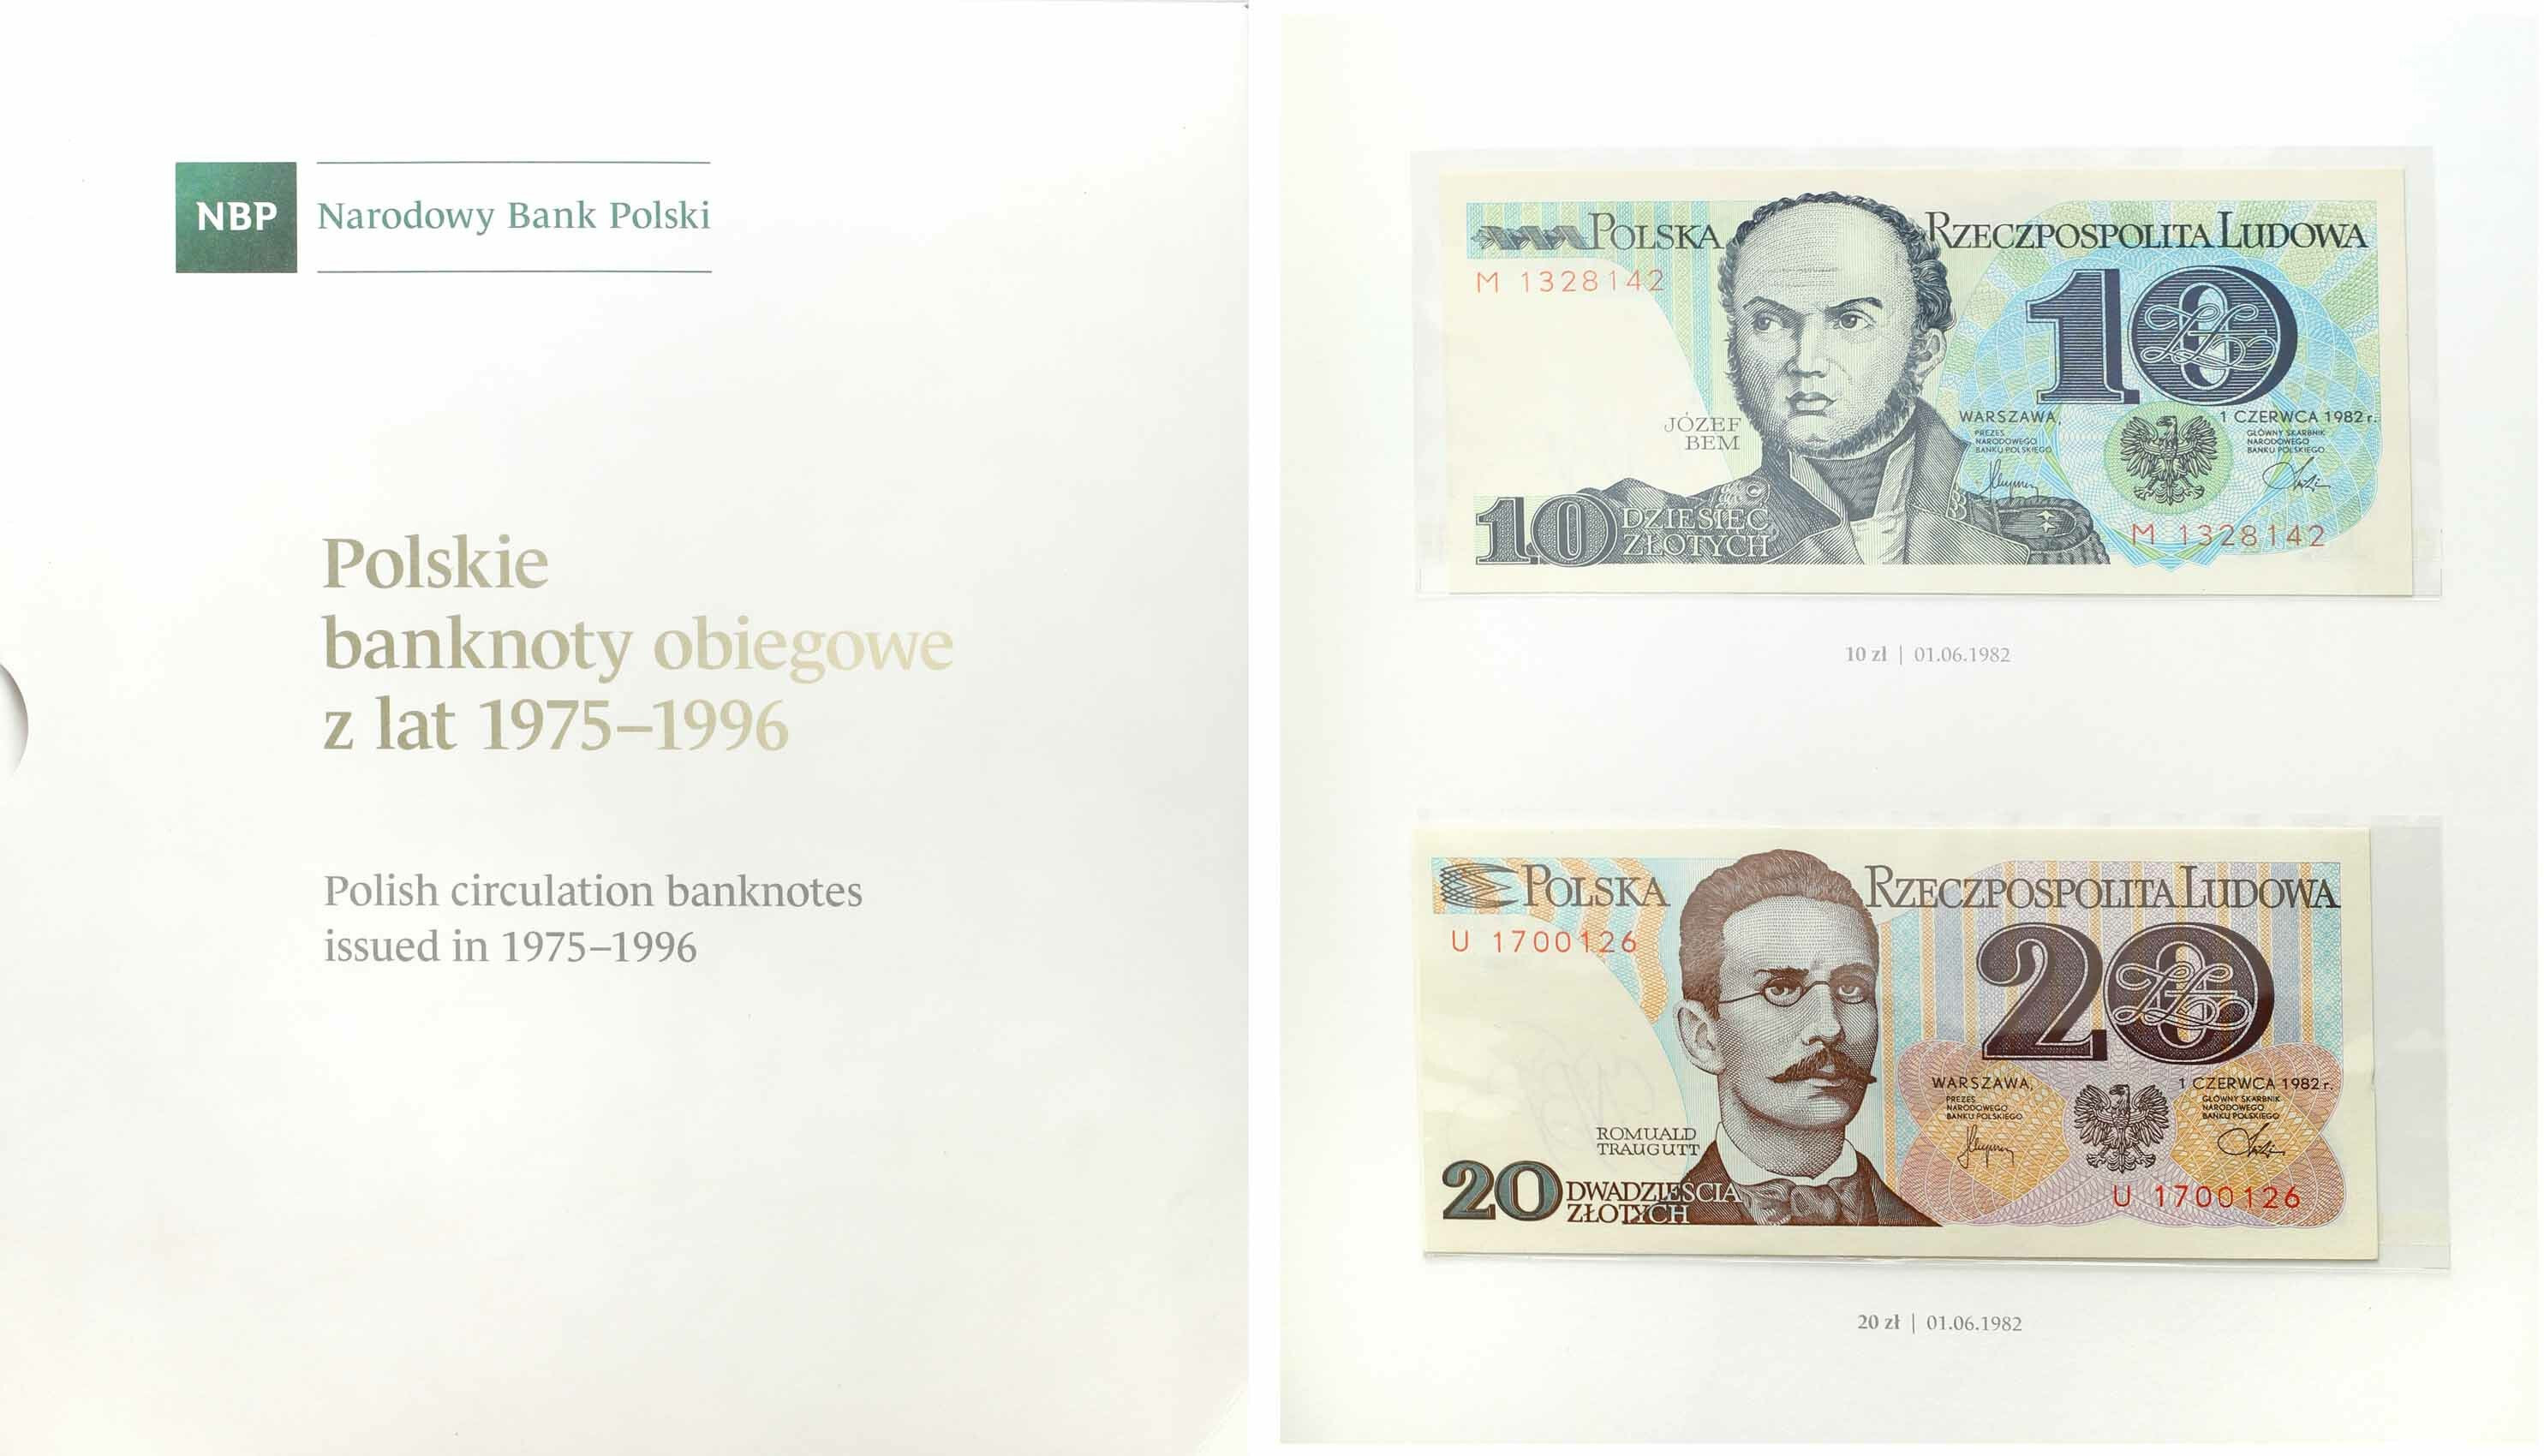 NBP. Polskie banknoty obiegowe 1975-1996 - KOMPLET